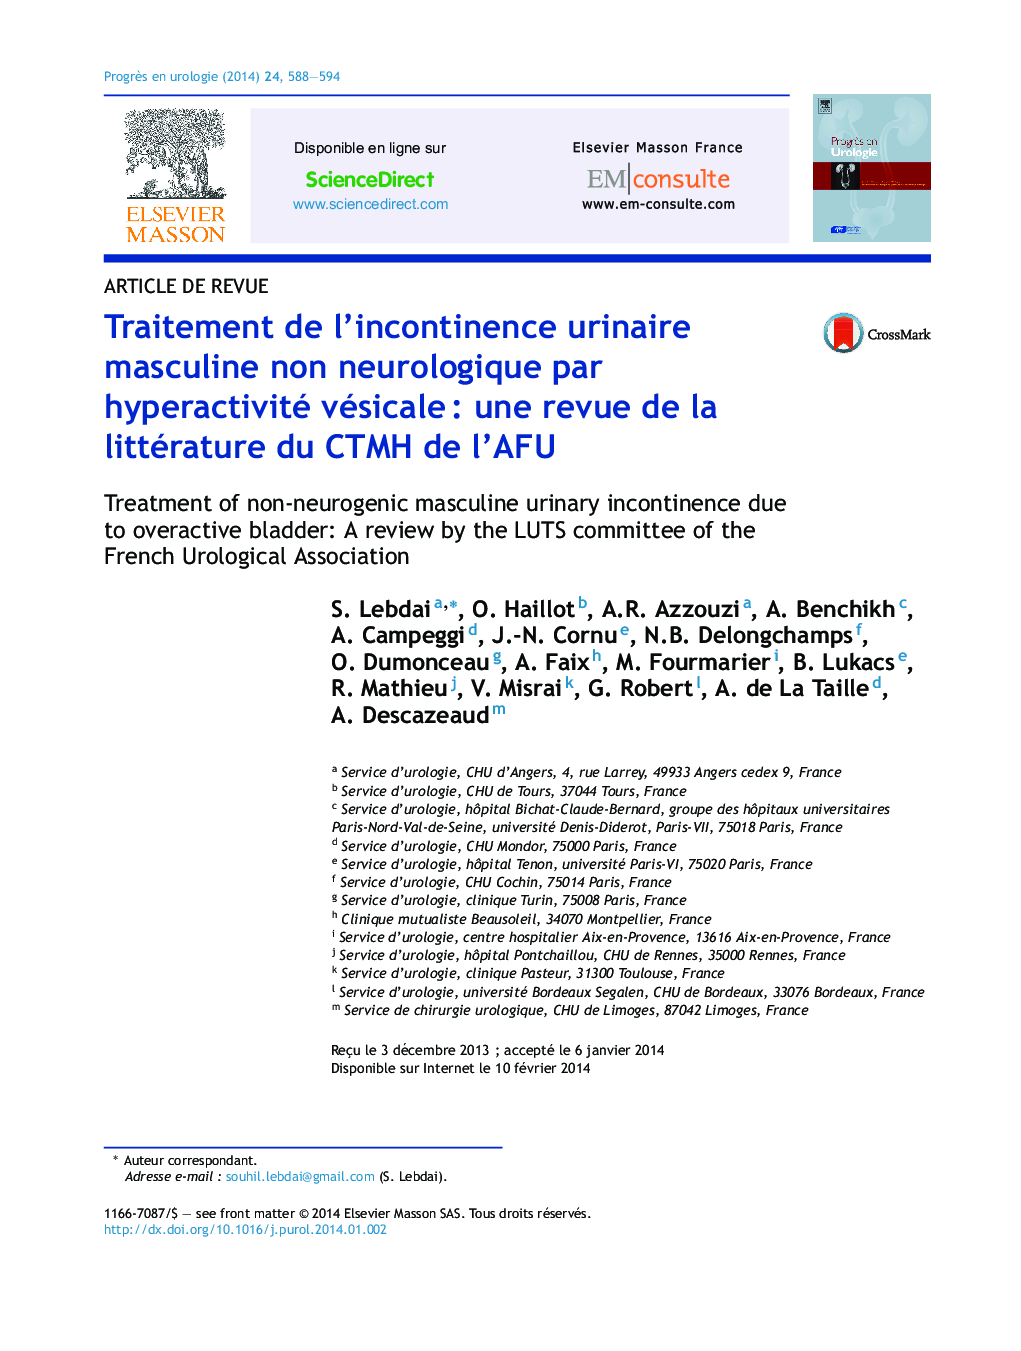 Traitement de l'incontinence urinaire masculine non neurologique par hyperactivité vésicaleÂ : une revue de la littérature du CTMH de l'AFU